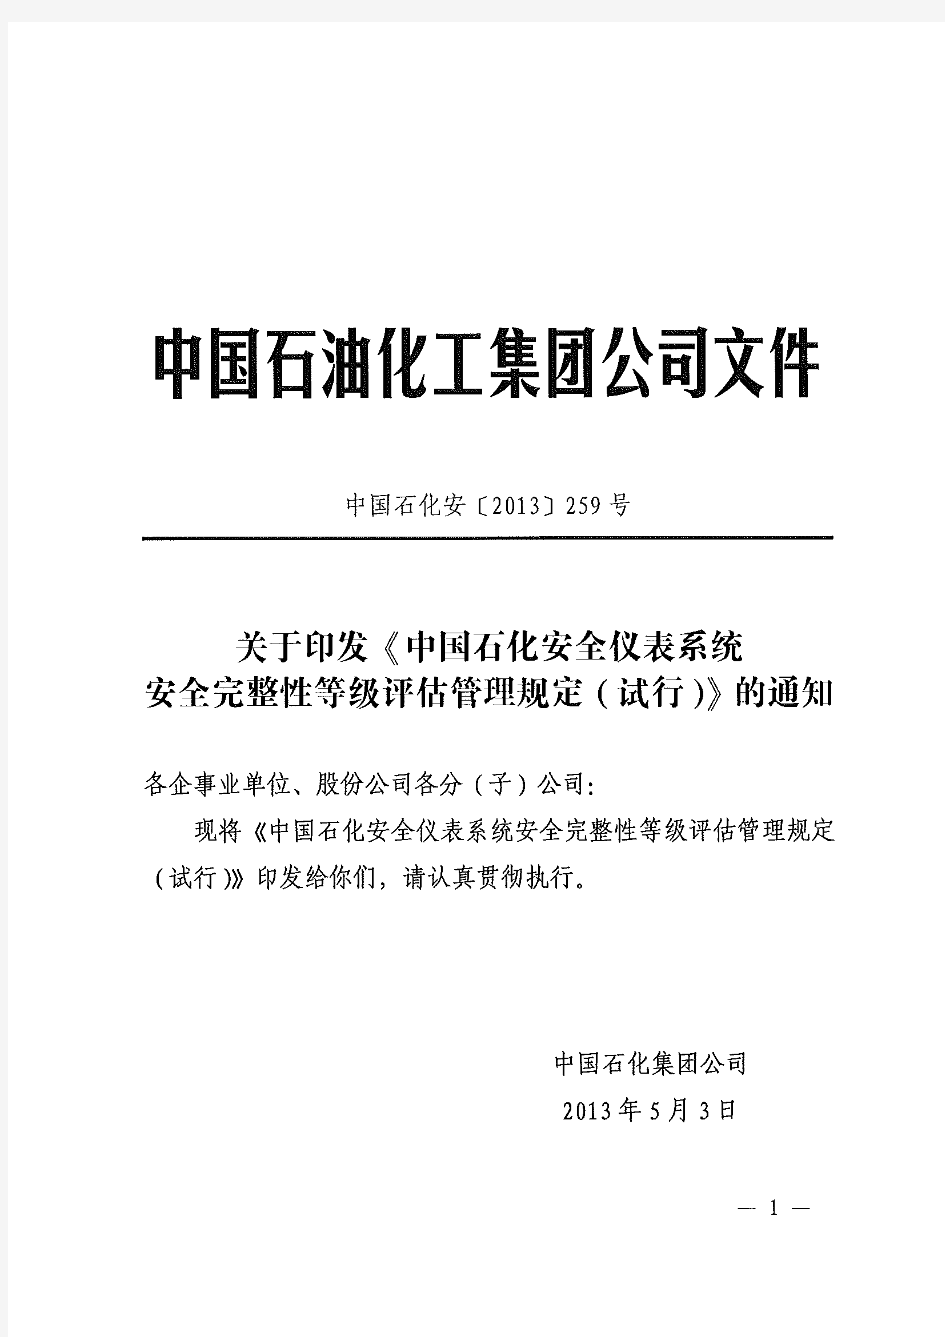 中石化安[2013]259号《中国石化安全仪表系统安全完整性等级评估管理规定(试行)》